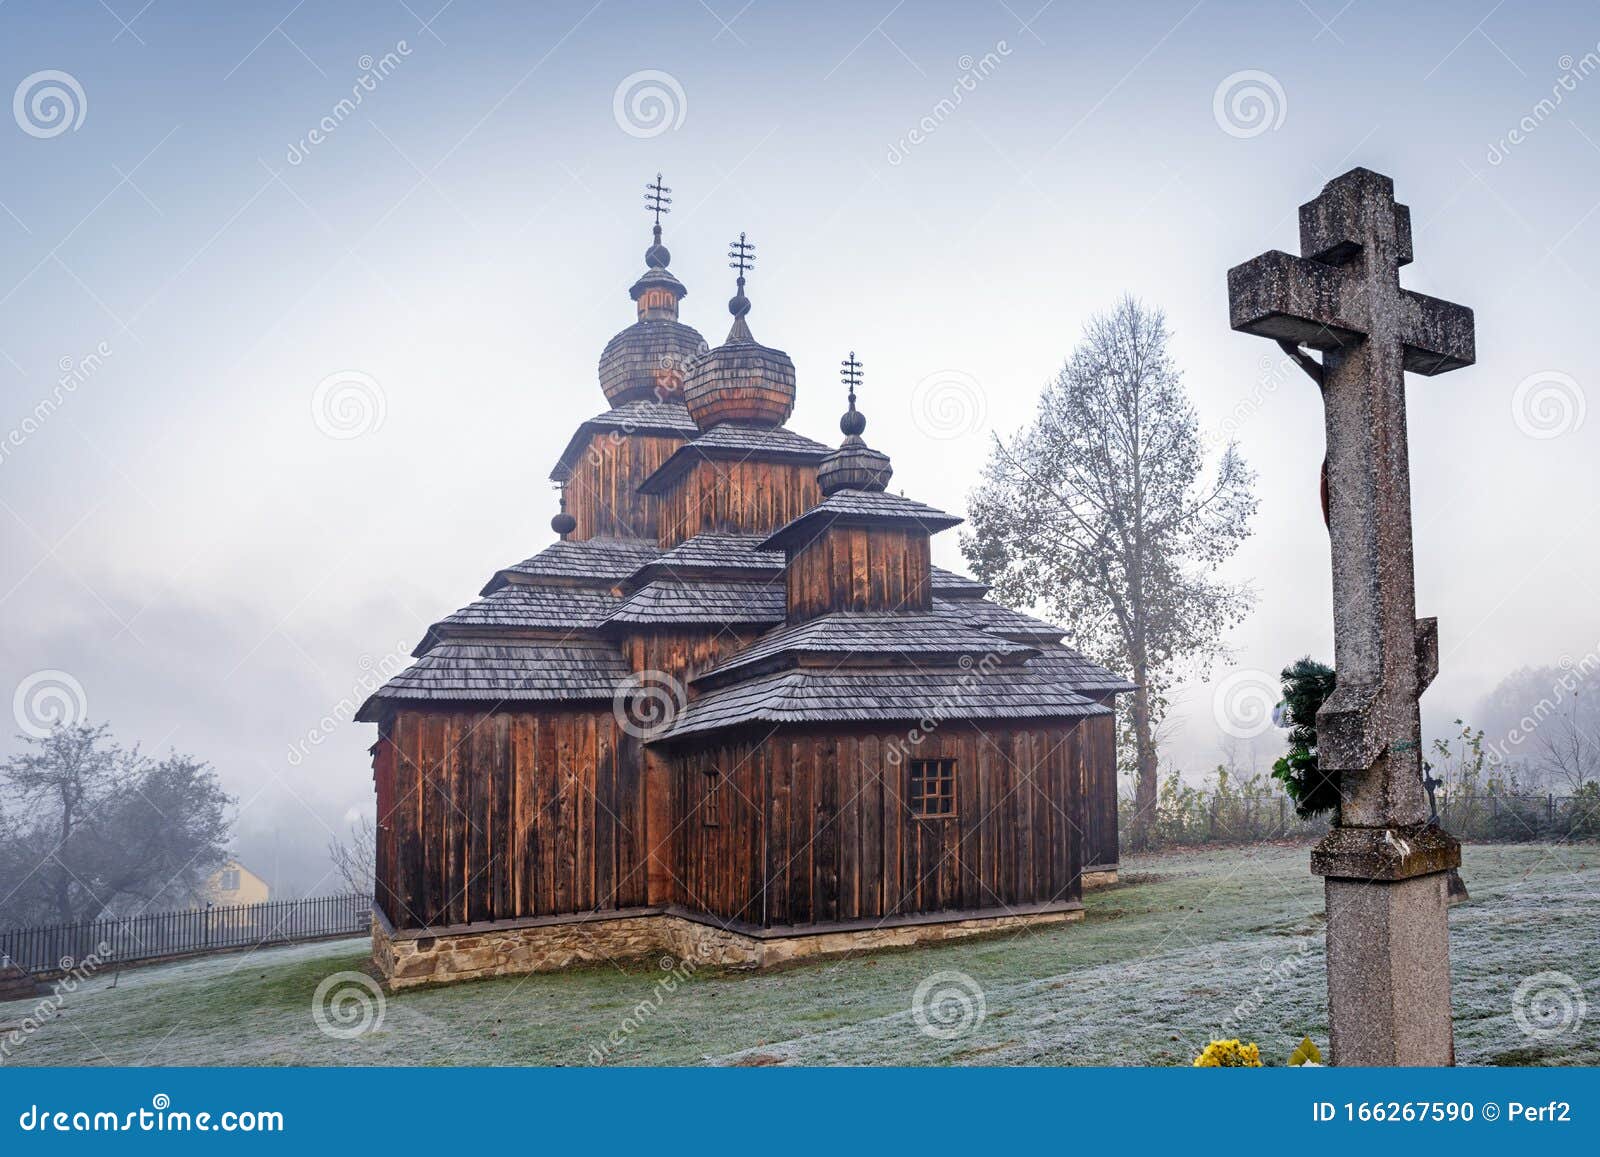 church of saint paraskeva